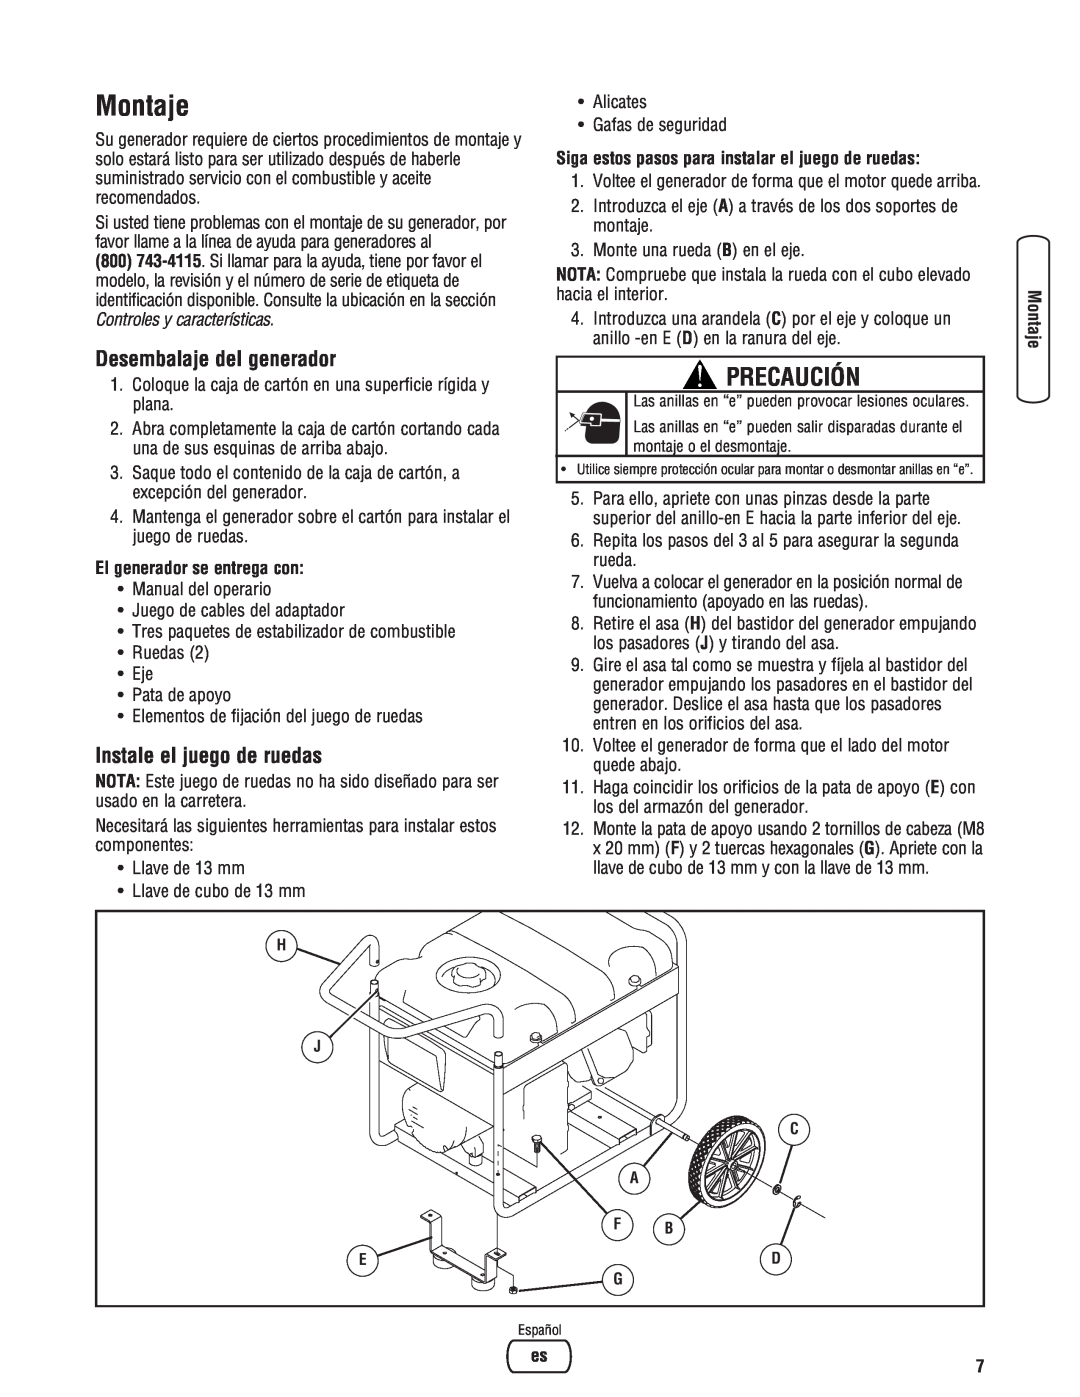 Briggs & Stratton Portable Generator manual Montaje, Precaución, Desembalaje del generador, Instale el juego de ruedas 